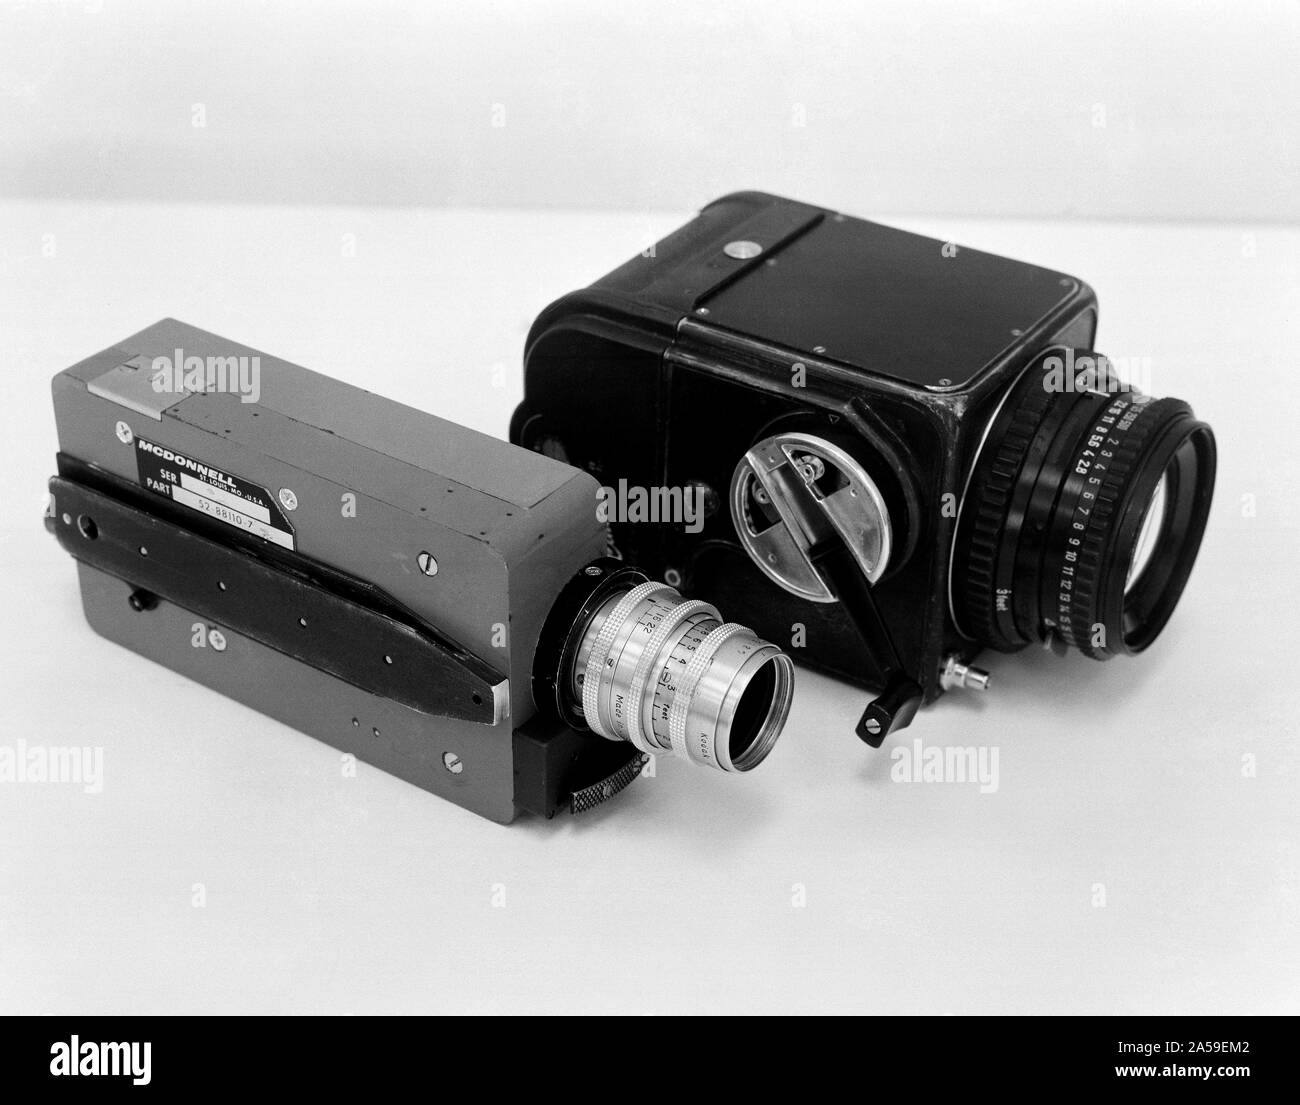 (März 1965) - - - Zwei Kameras, die auf dem Gemini-Titan 3 orbitalen Flug verwendet werden. Die Heller ist ein McDonnell 16 mm sequentielle Kamera, mit einem 120 Fuß film Kapazität, und ein 25mm f/1.9 Objektiv. Die schwarze Kamera ist eine modifizierte Hasselblad, in der Hand, mit einem 70 mm flimback, mit einem 80mm f/2.8 Objektiv. Stockfoto